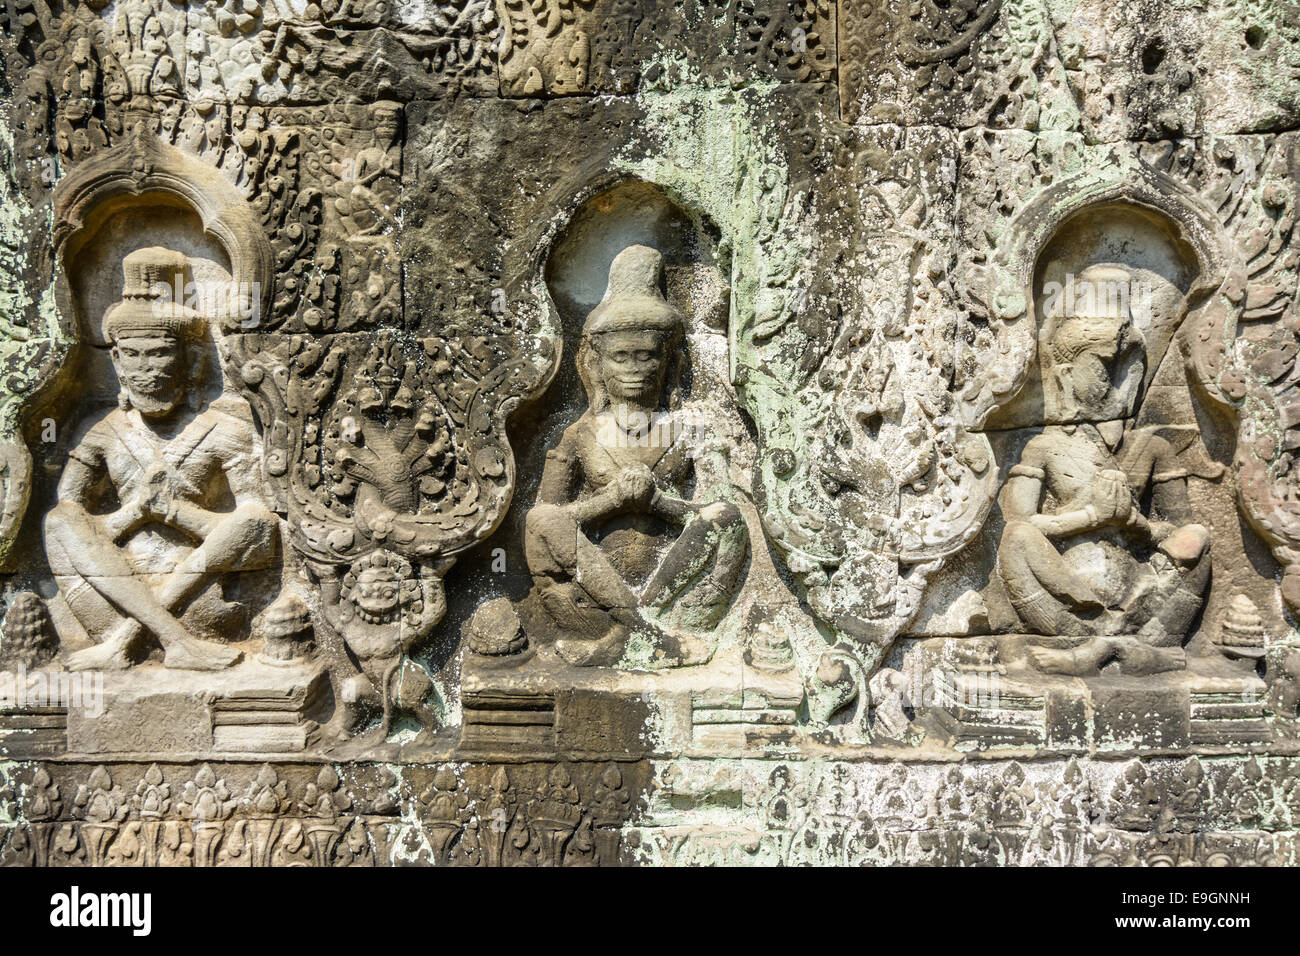 Bas-relief à l'ancien temple d'Angkor Wat, au Cambodge Banque D'Images